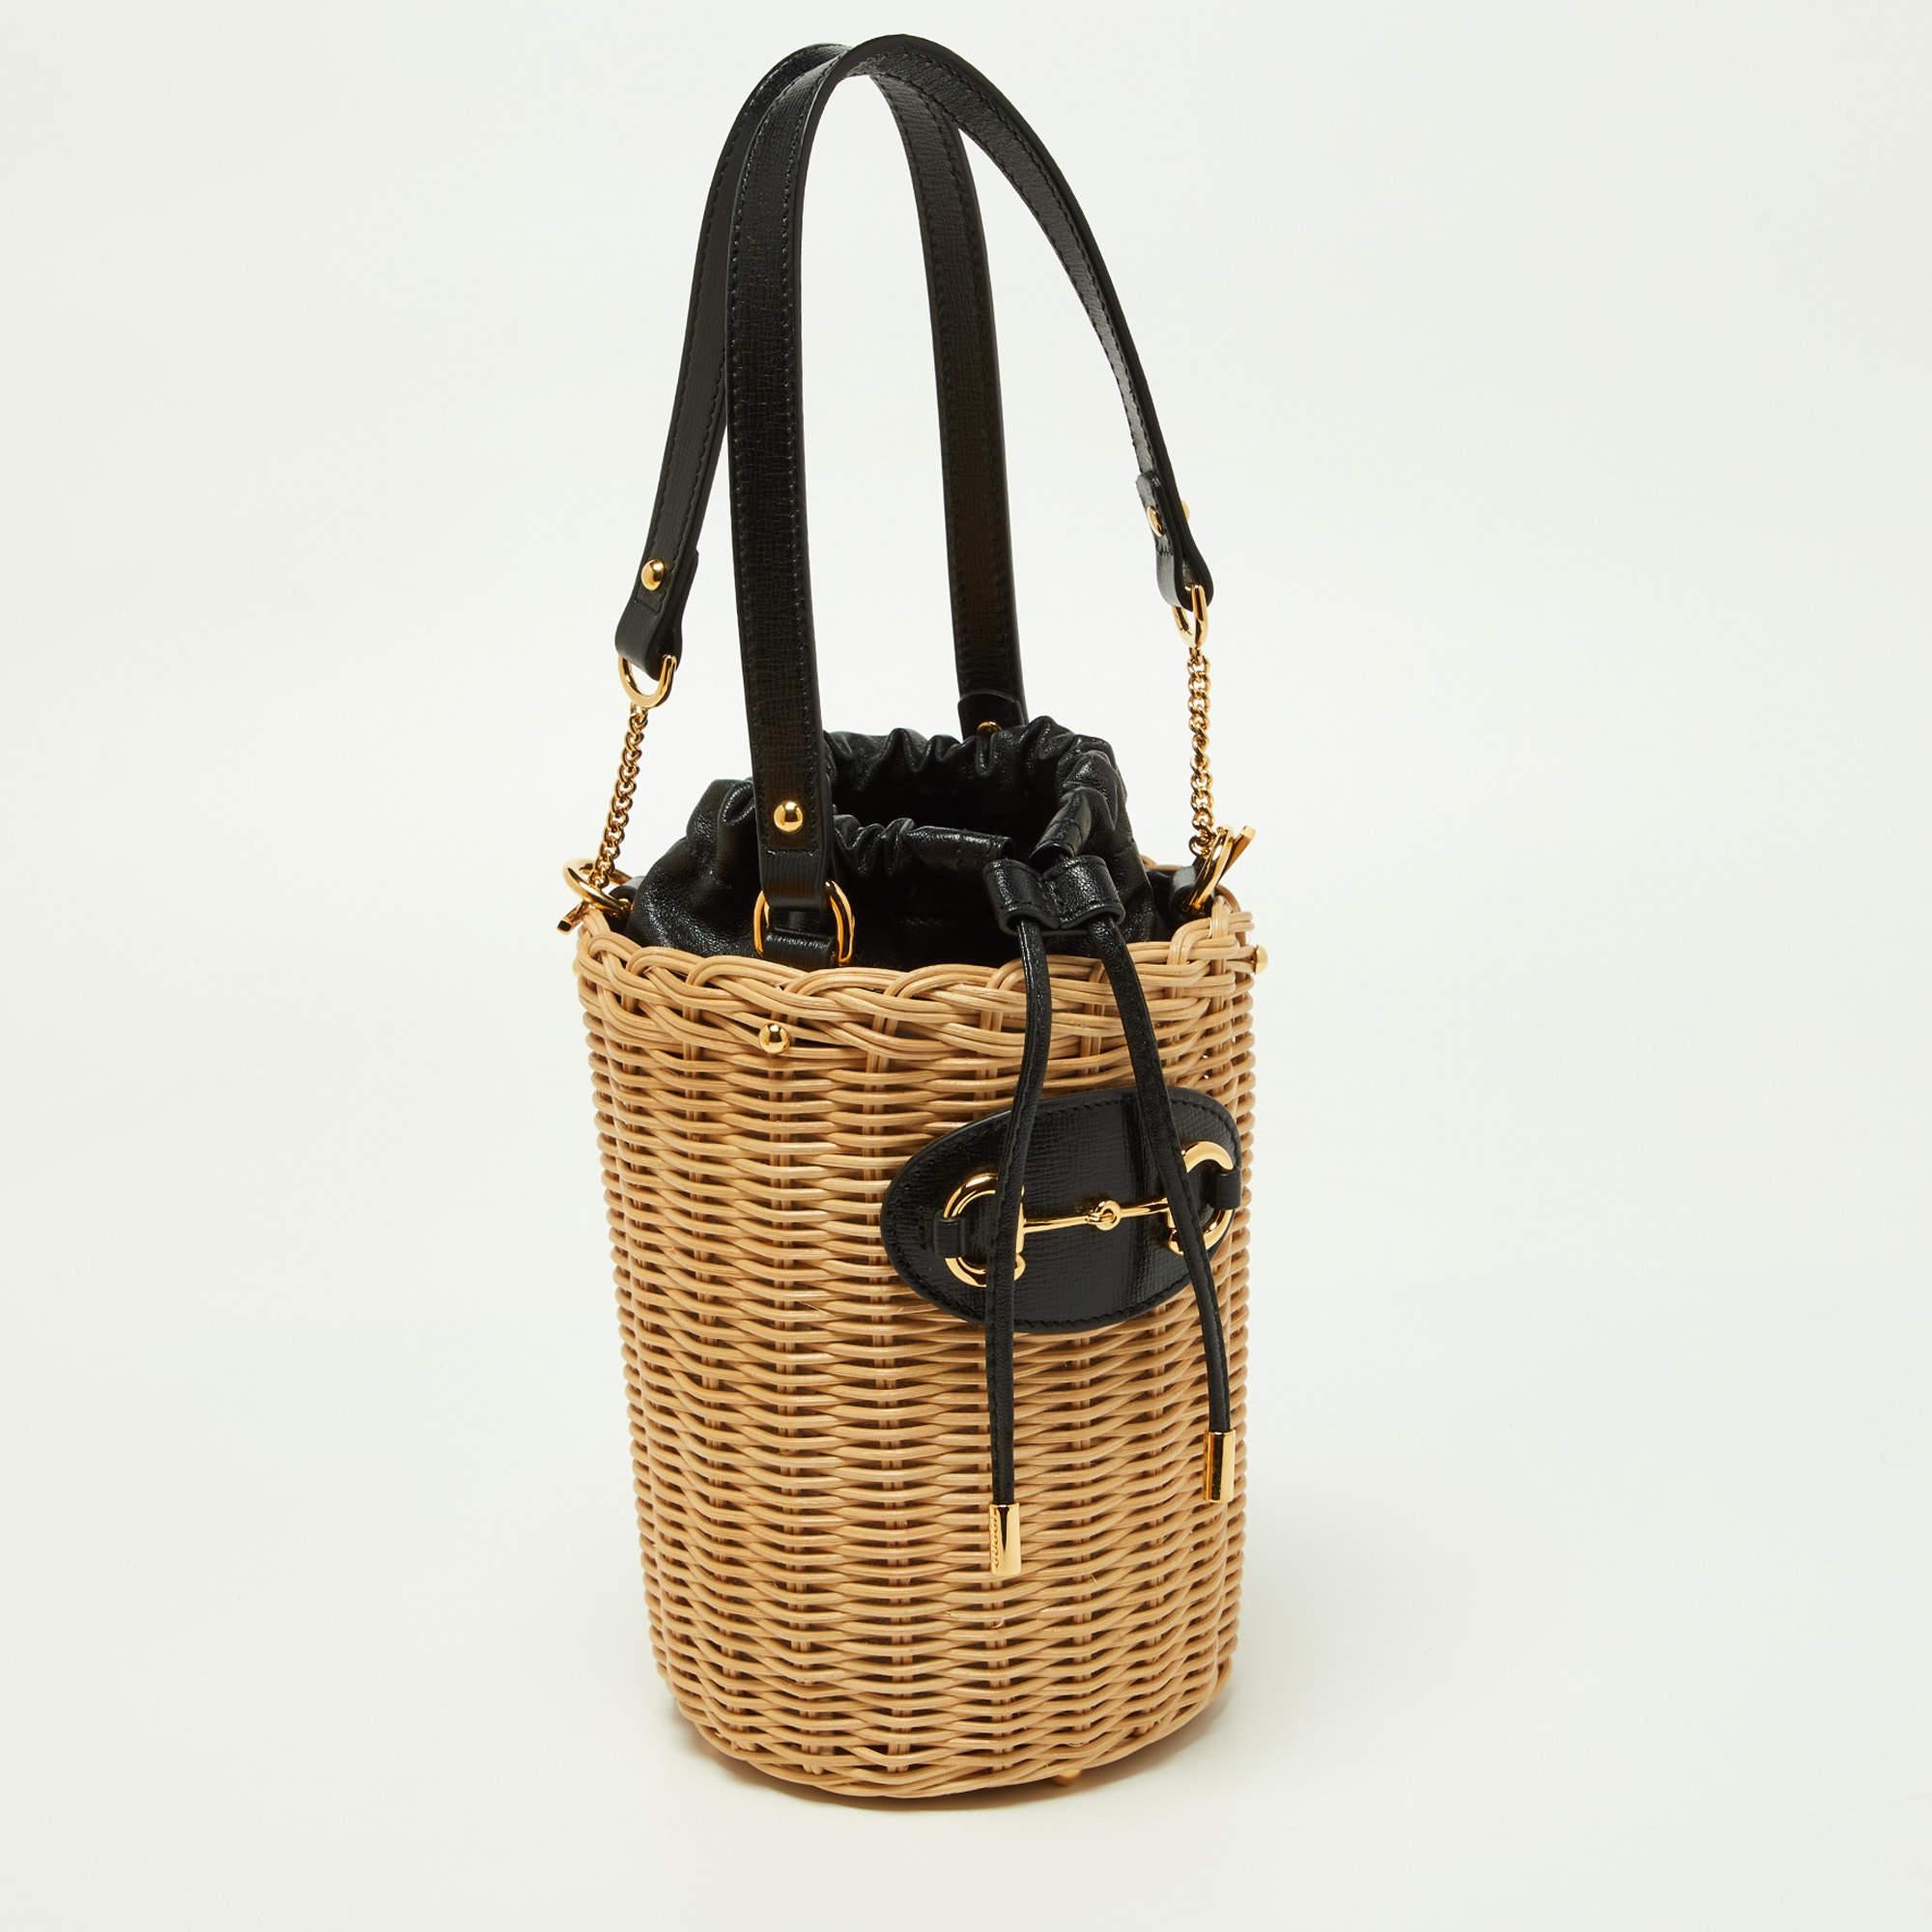 Die Gucci Horsebit 1955 Bucket Bag ist ein schickes und vielseitiges Accessoire. Sein Korpus besteht aus beigem Korbgeflecht mit schwarzem Lederbesatz und ist mit dem kultigen Horsebit-Detail verziert. Die Tasche hat einen geräumigen Innenraum,